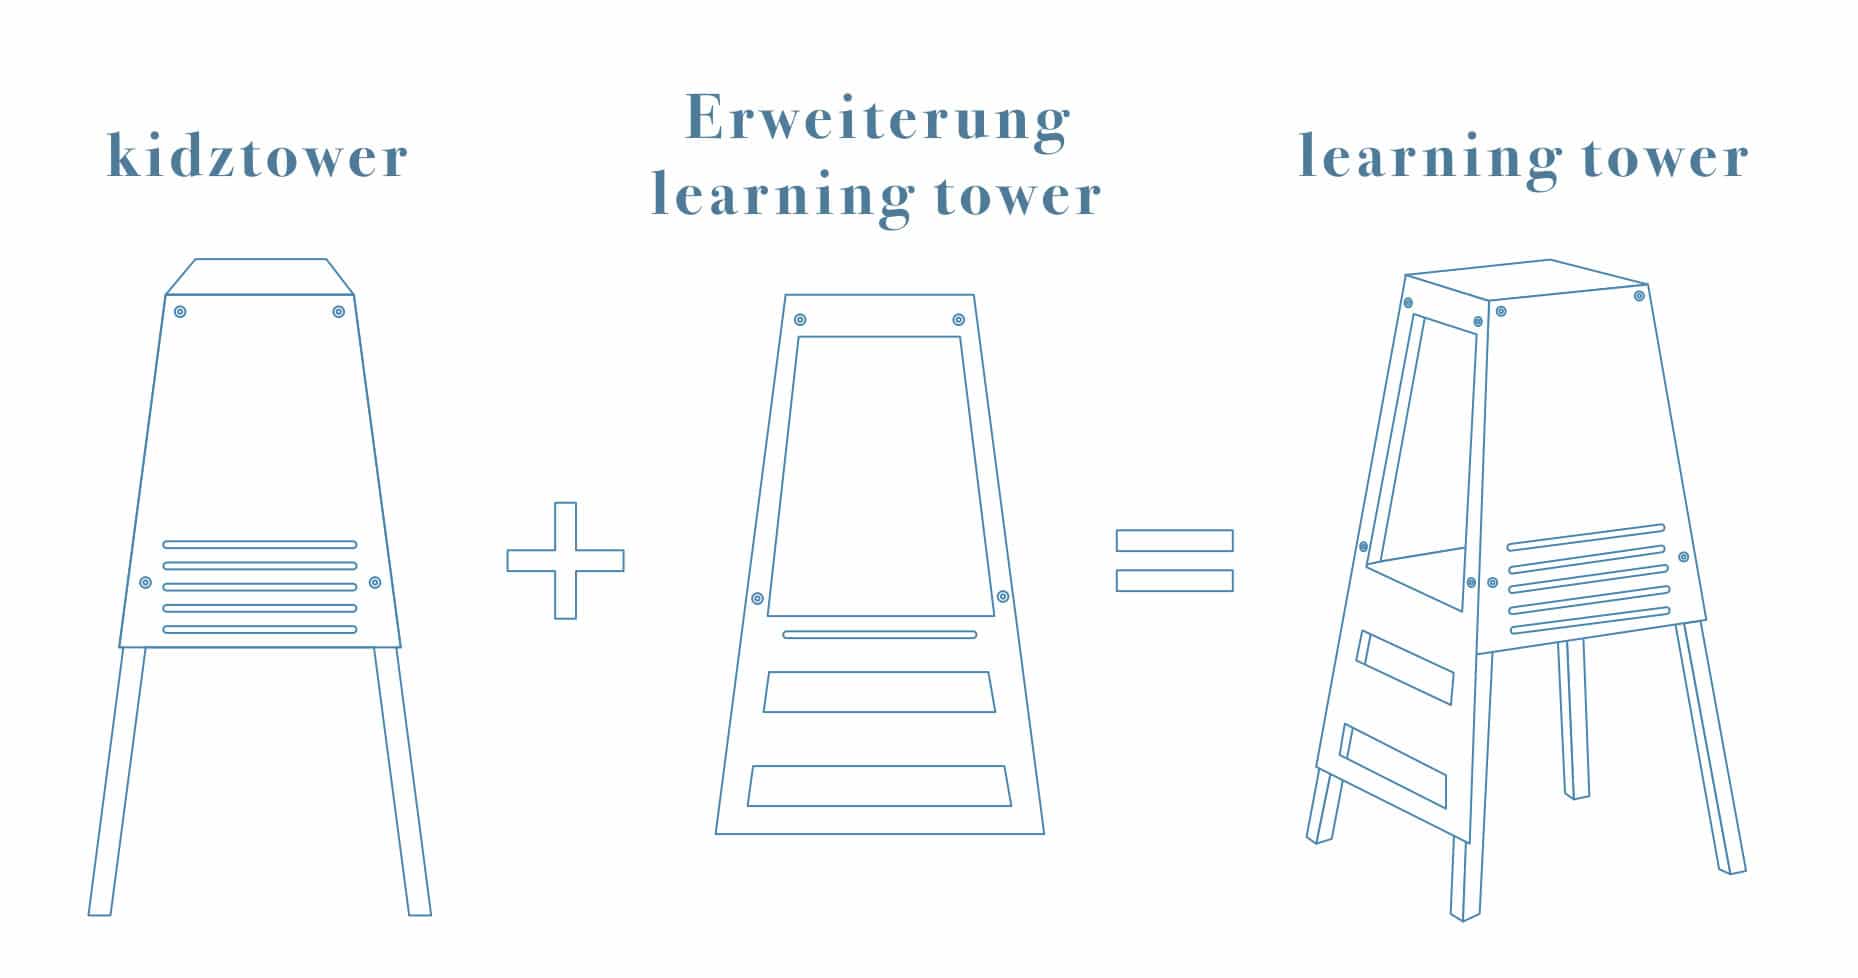 WERBUNG – Der Kidztower wird mit einer Erweiterung zum Learning Tower